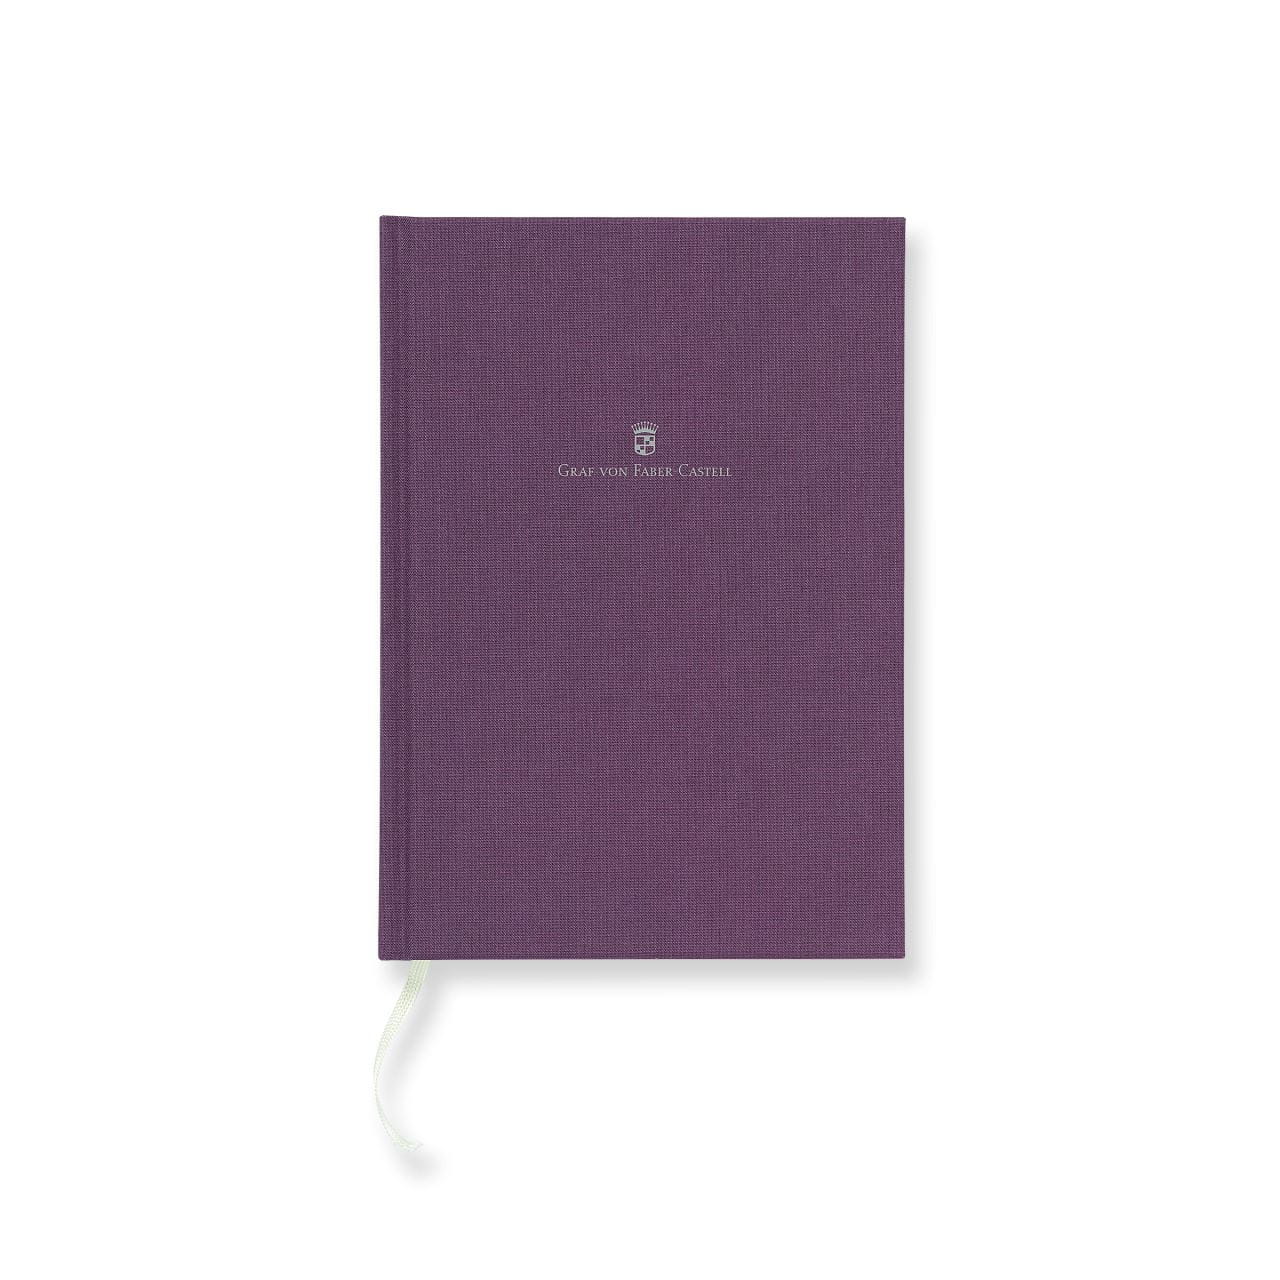 Graf-von-Faber-Castell - Linen-bound book A5 Violet Blue